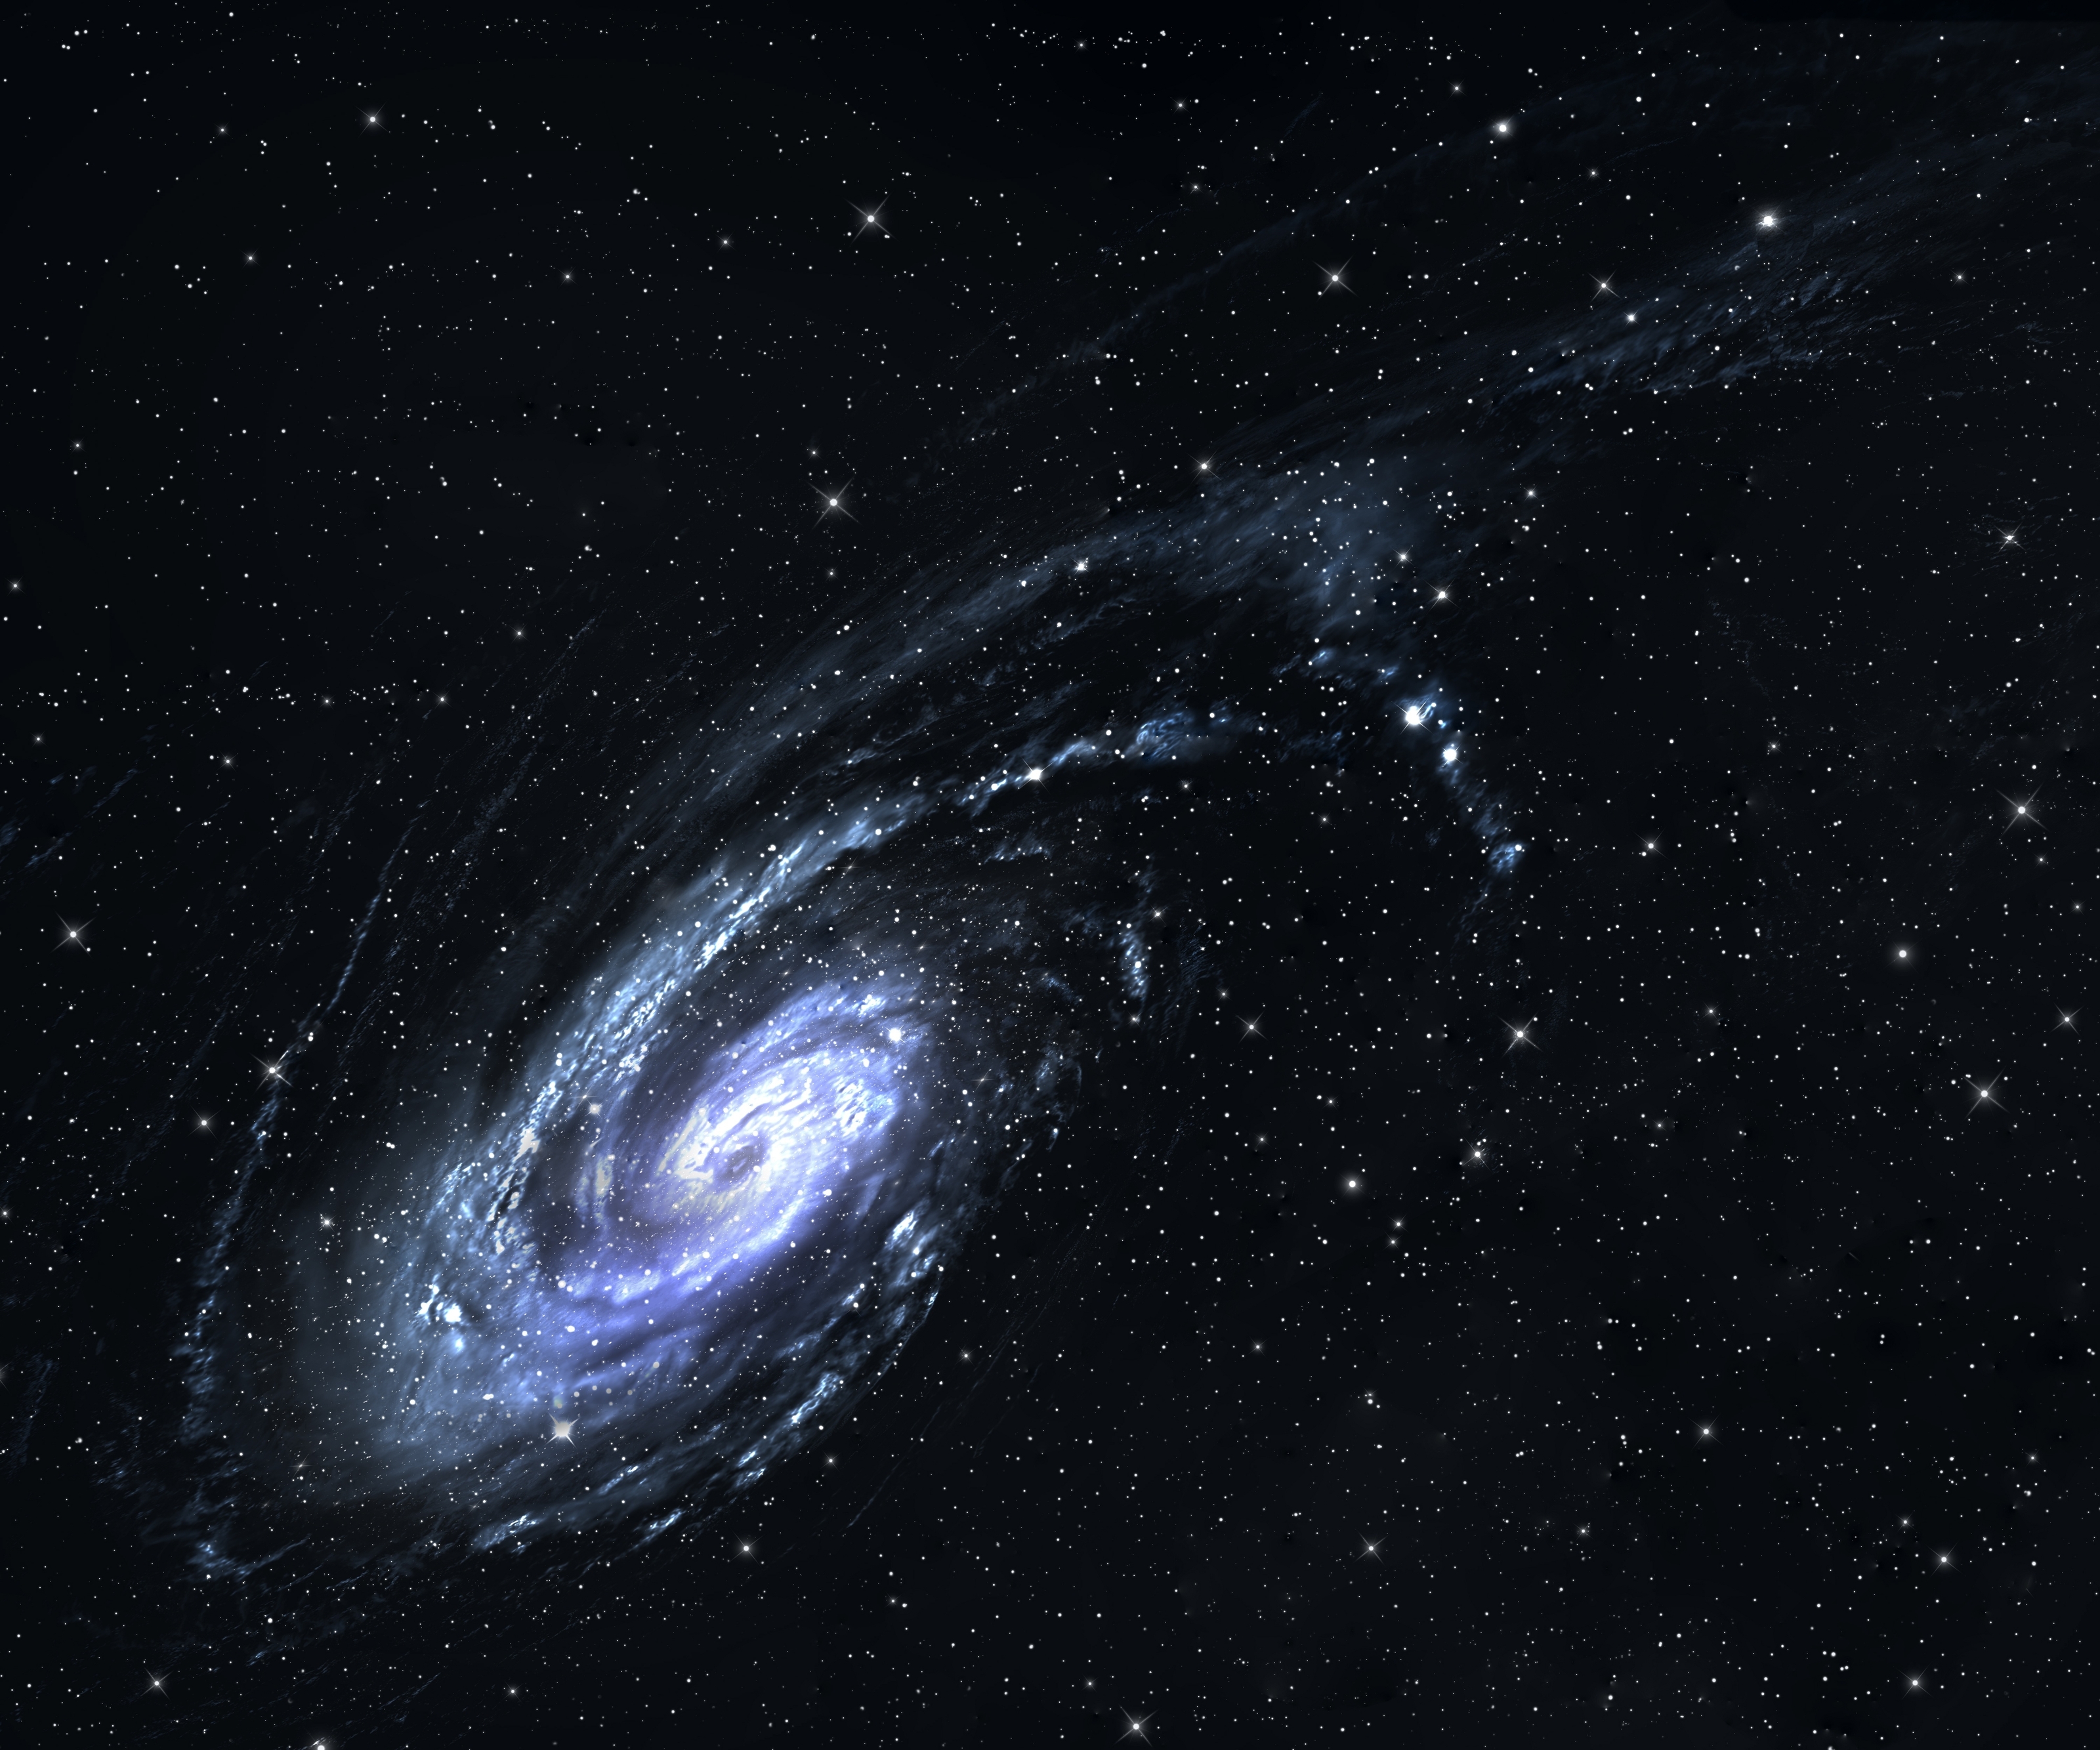 Spiral Galaxy Background